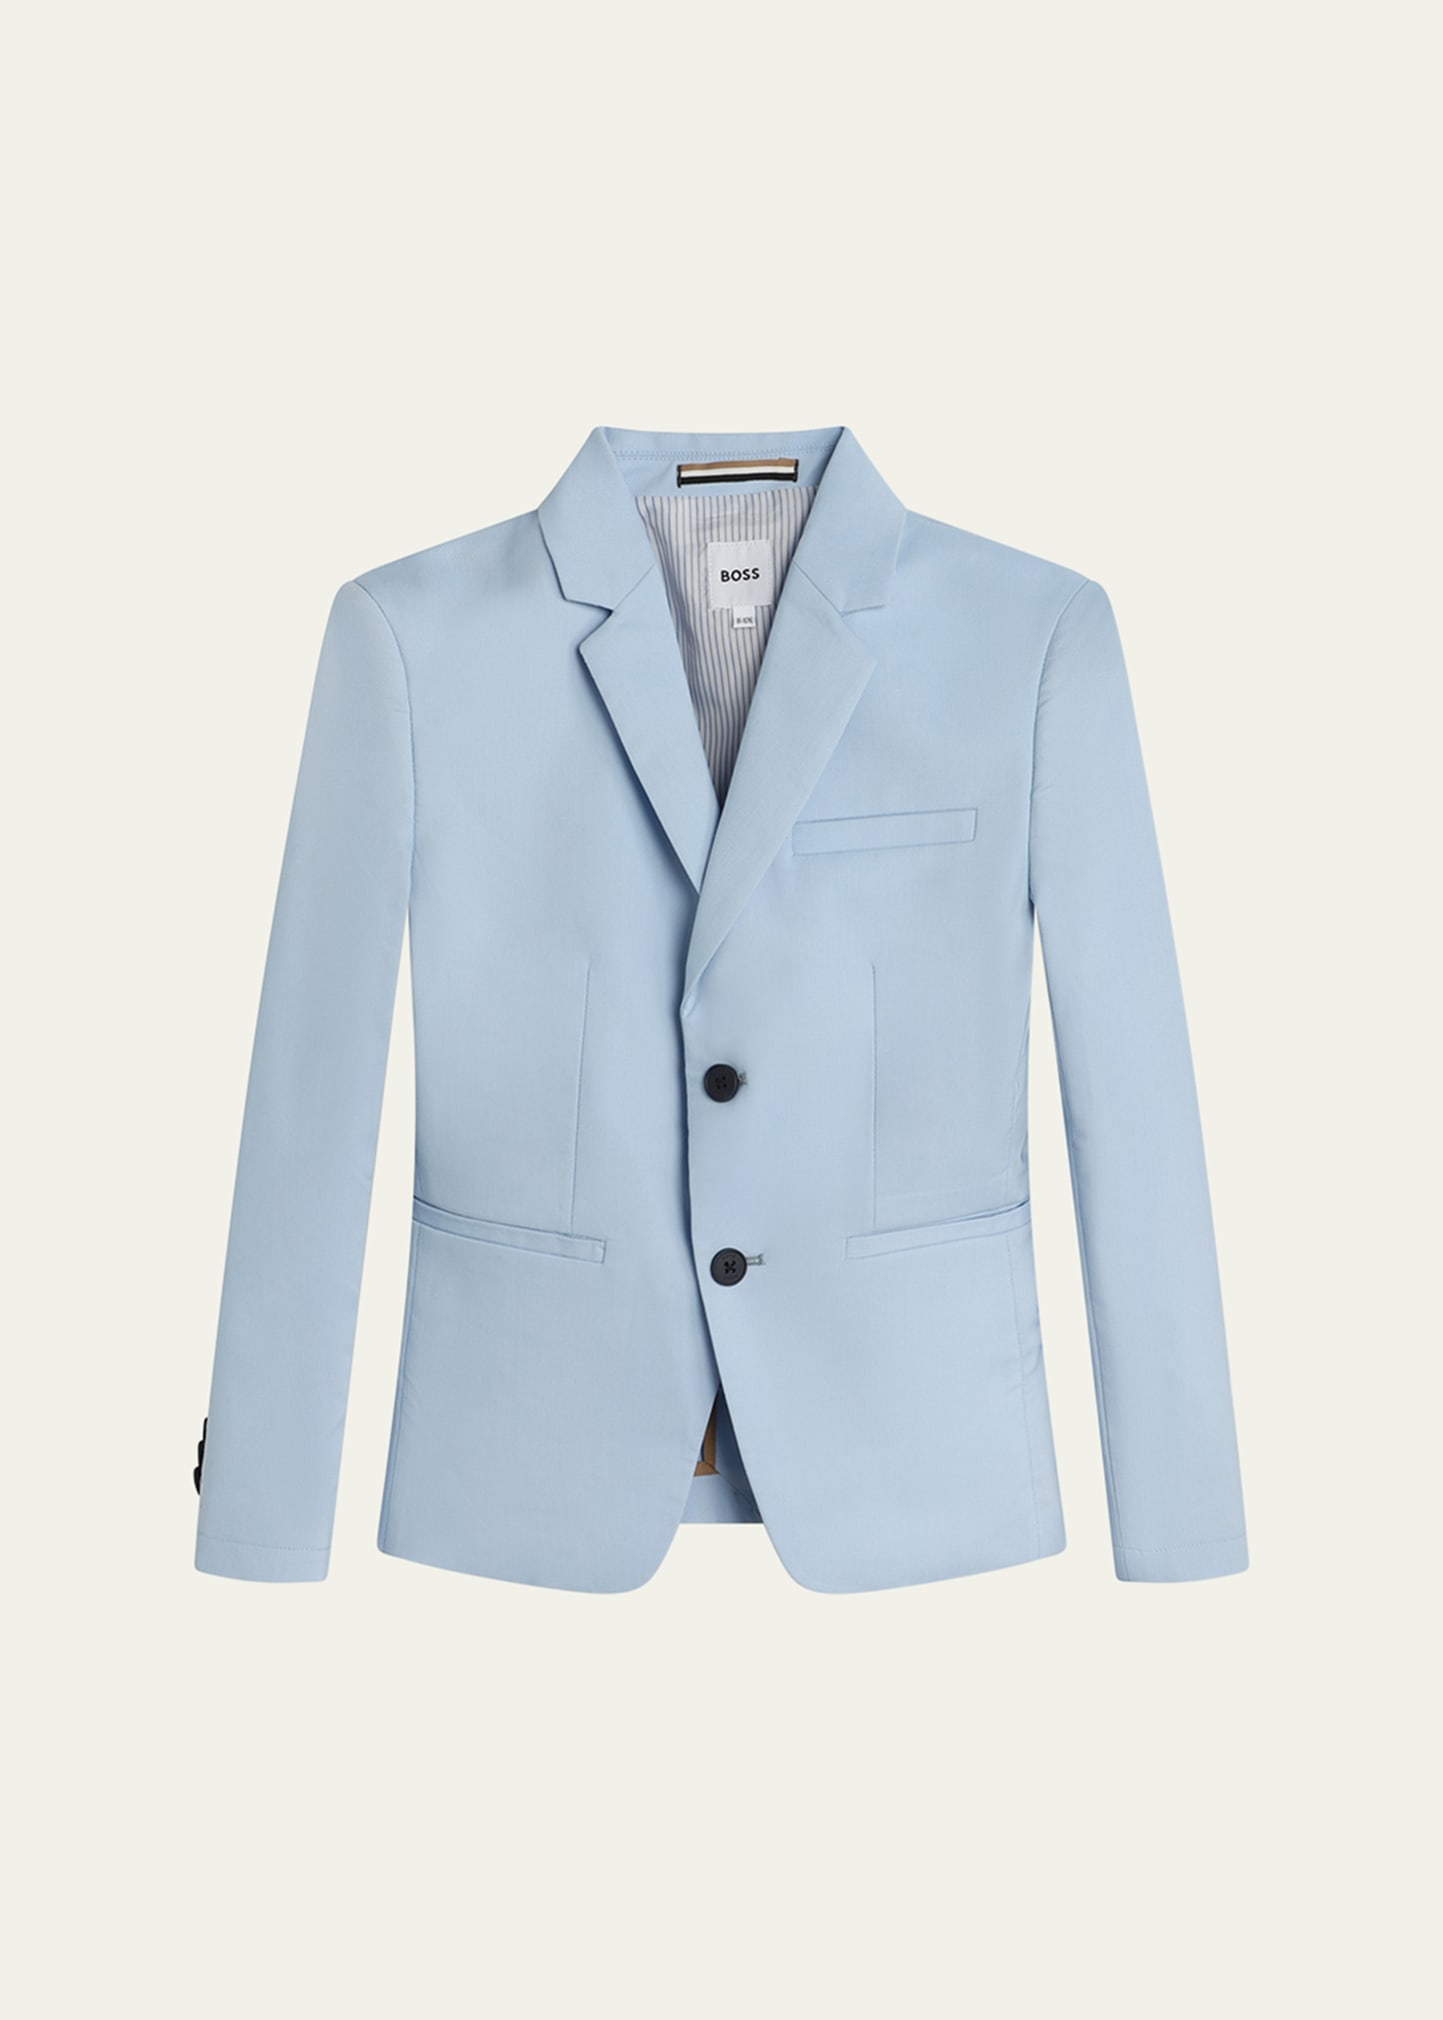 Hugo Boss Kids' Boy's Suit Jacket In 783-pale Blue